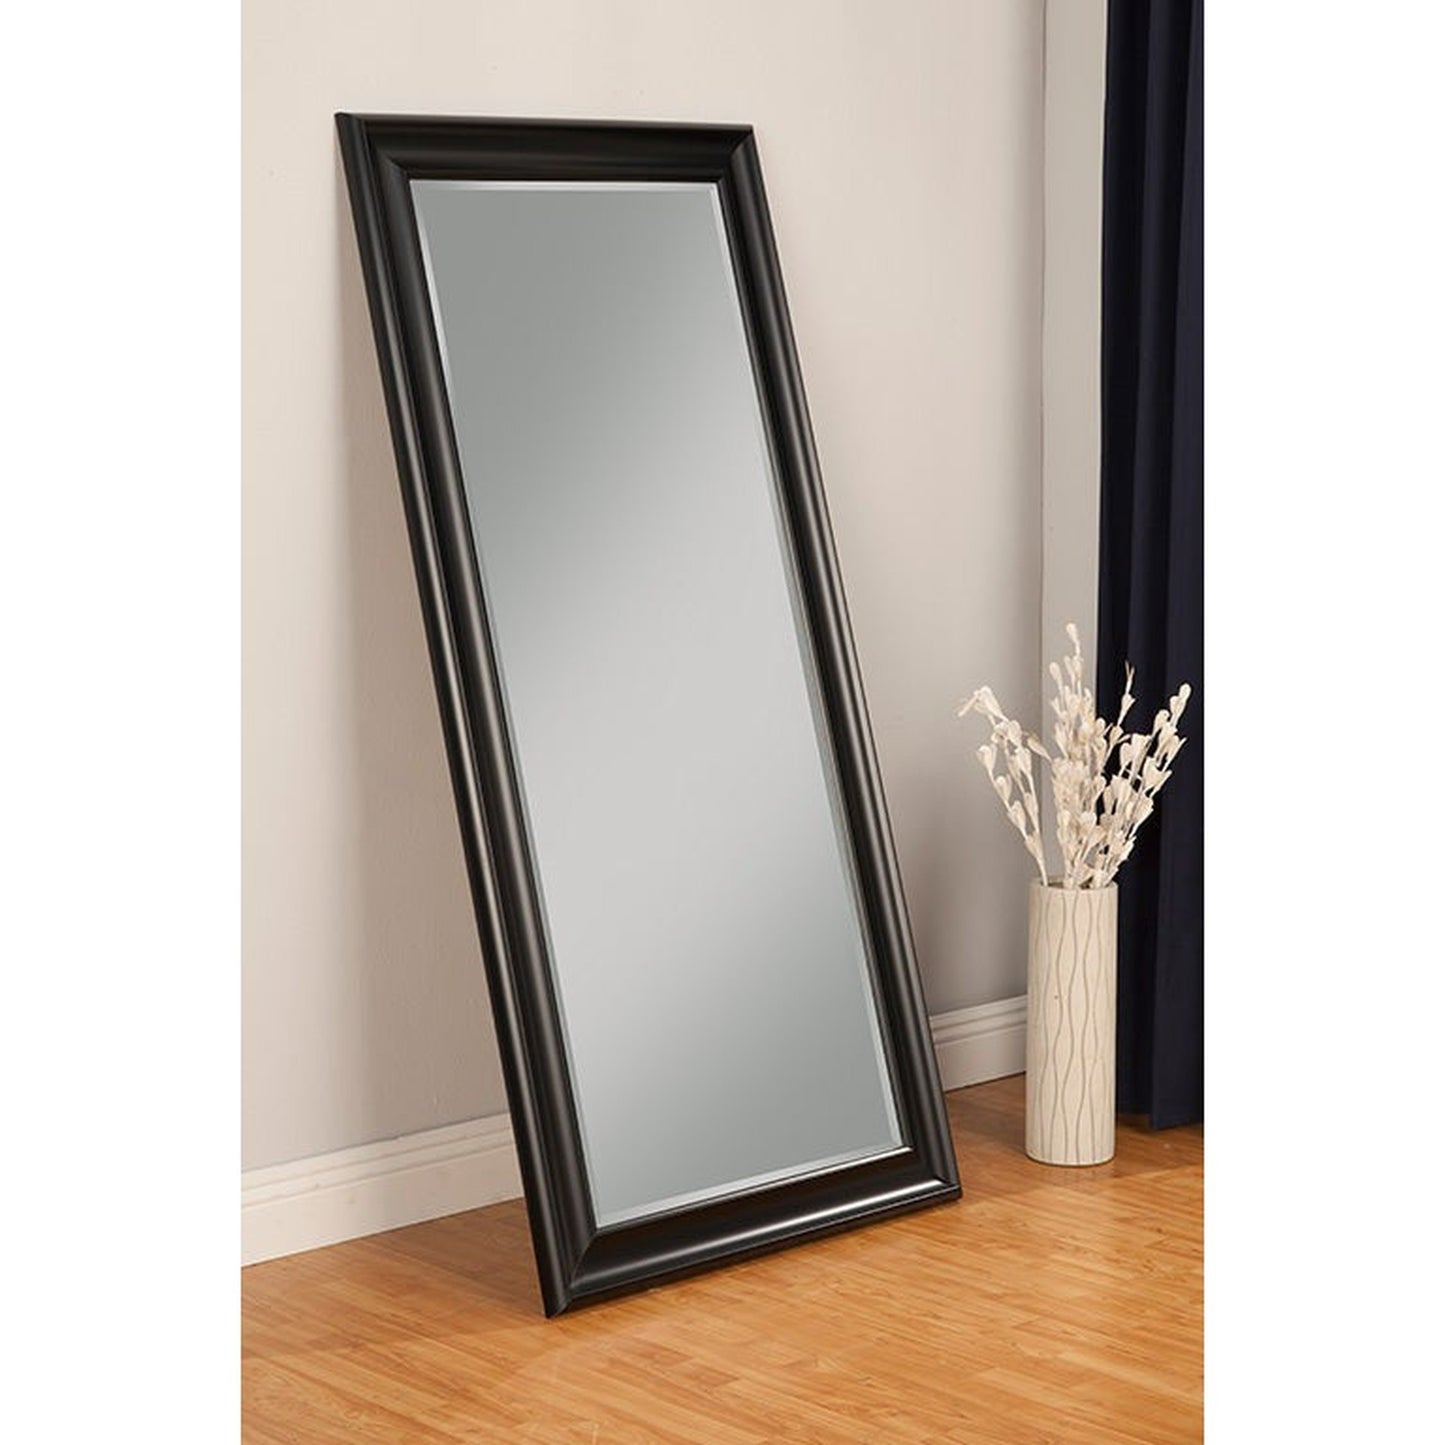 Benzara Black Rectangular Polystyrene Frame Full Length Leaner Mirror